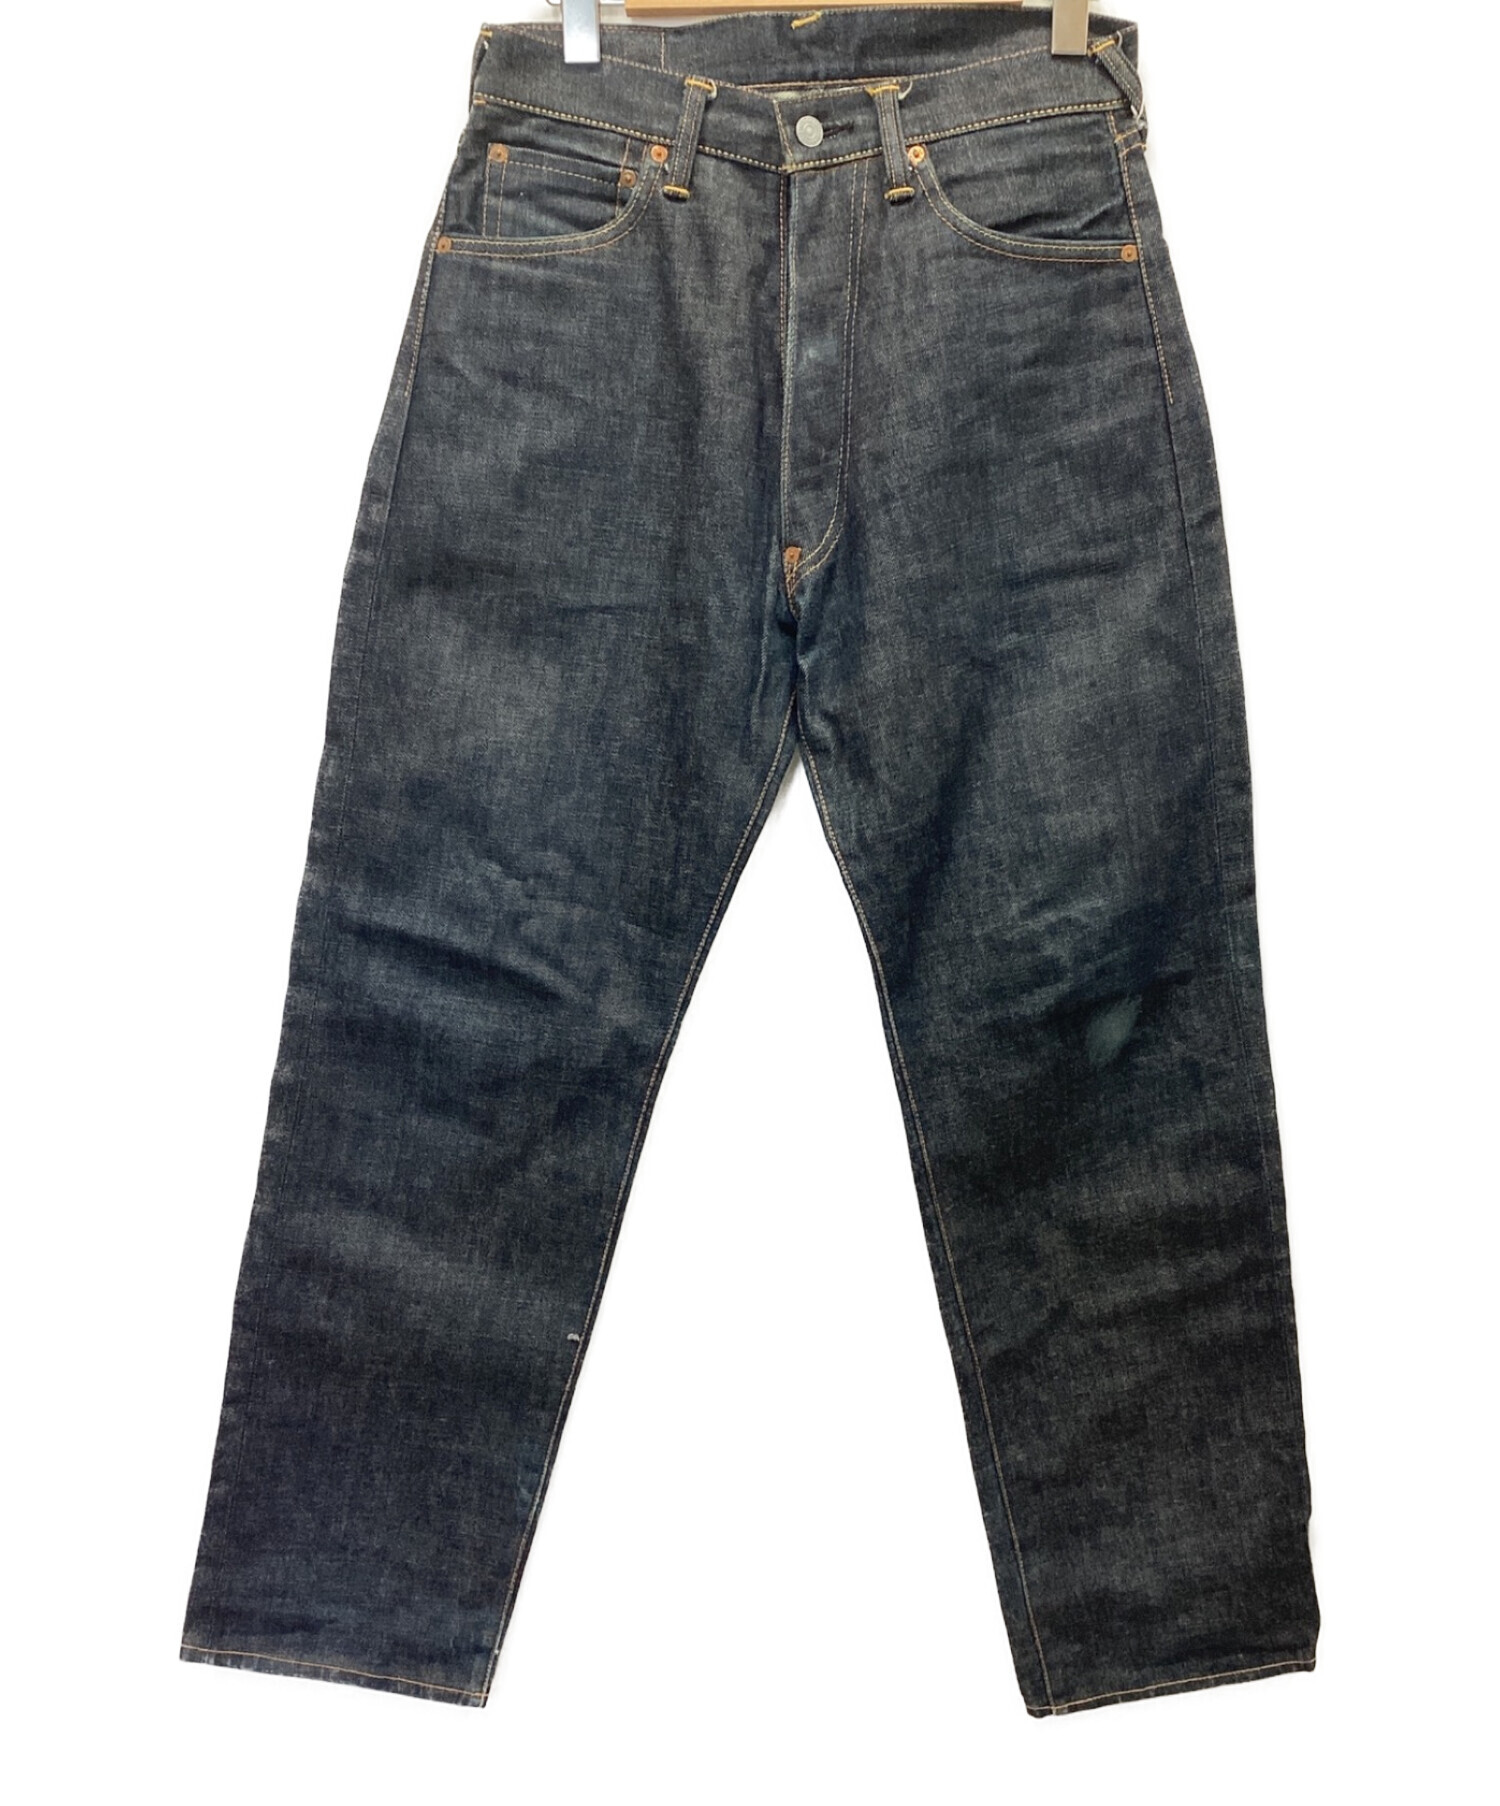 Evisu Jeans (エヴィスジーンズ) デニムパンツ インディゴ サイズ:W36